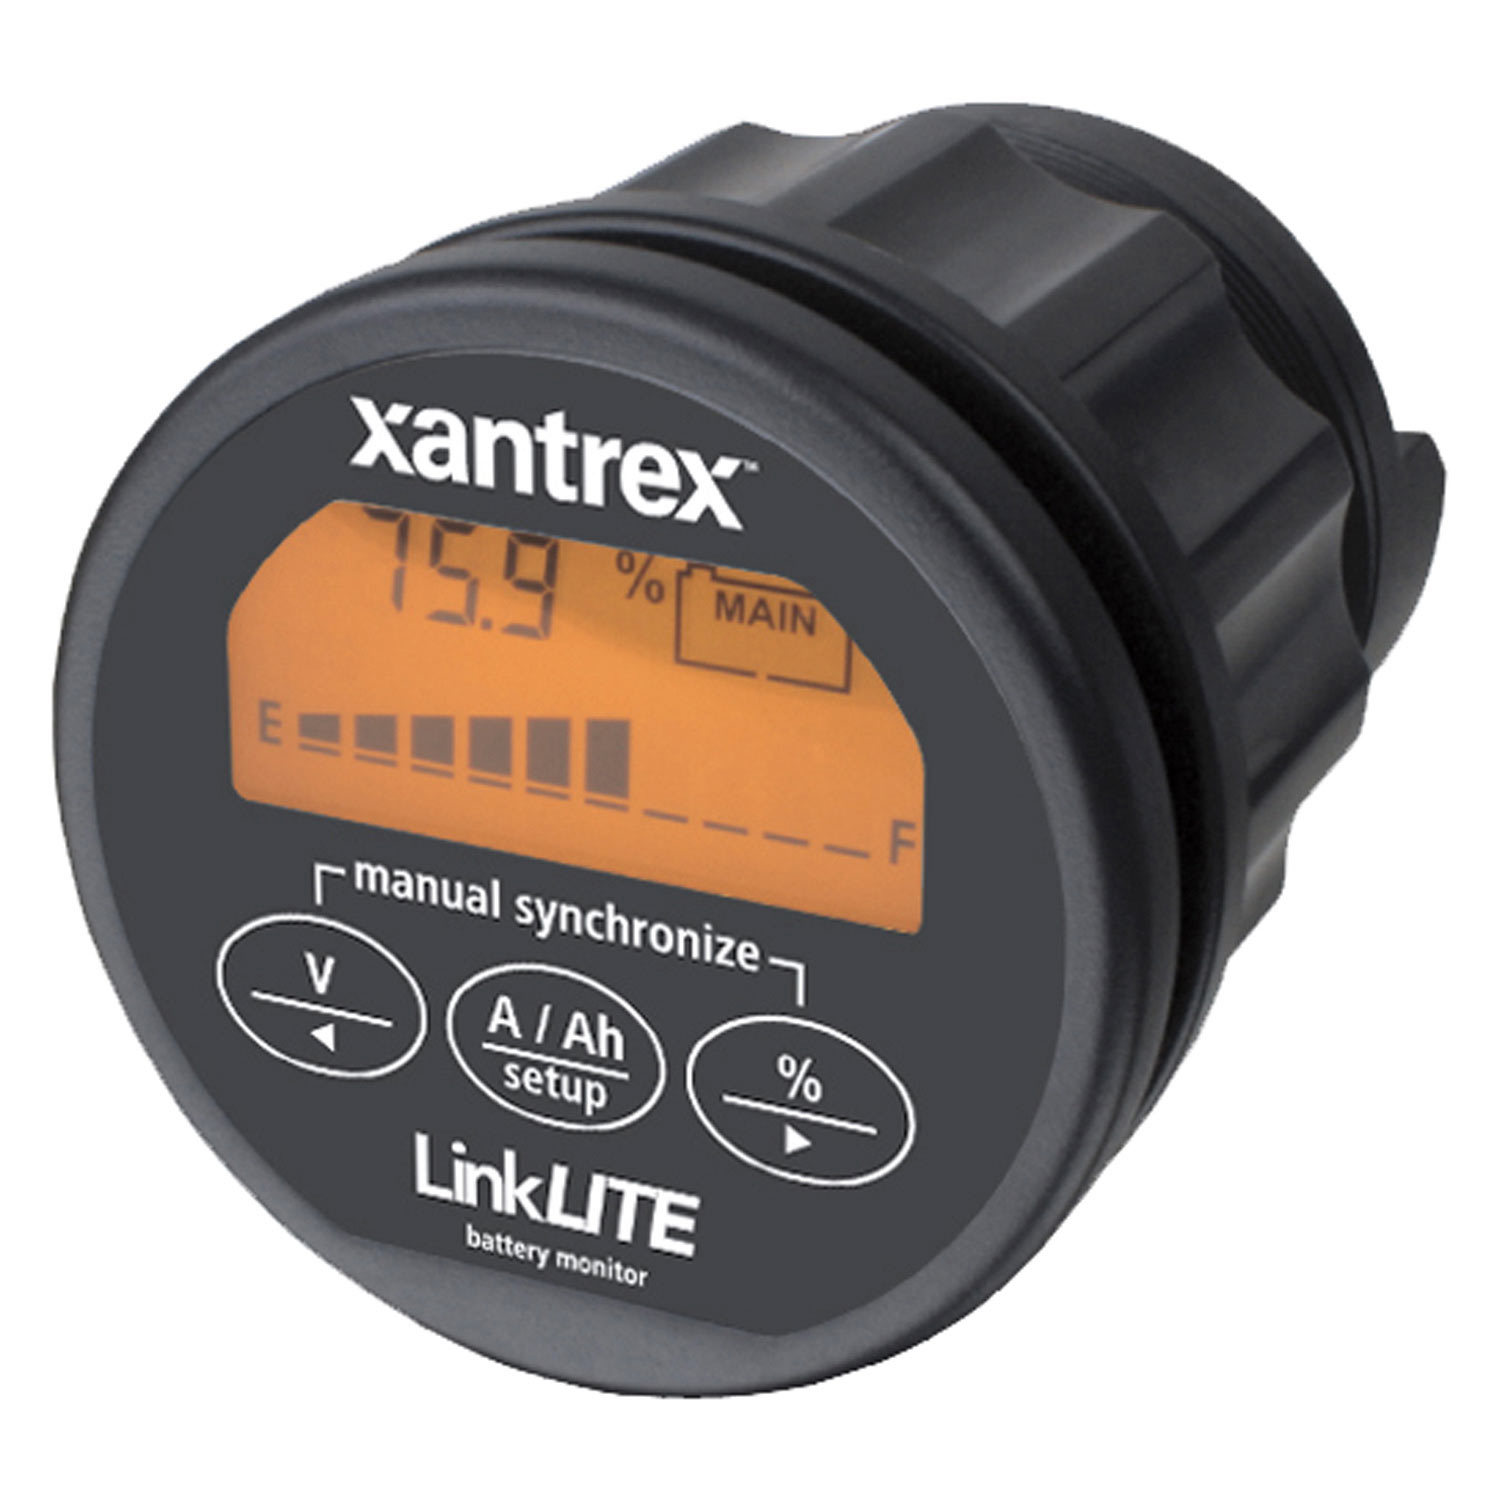 xantrex 84 2030 00 linklite battery monitor